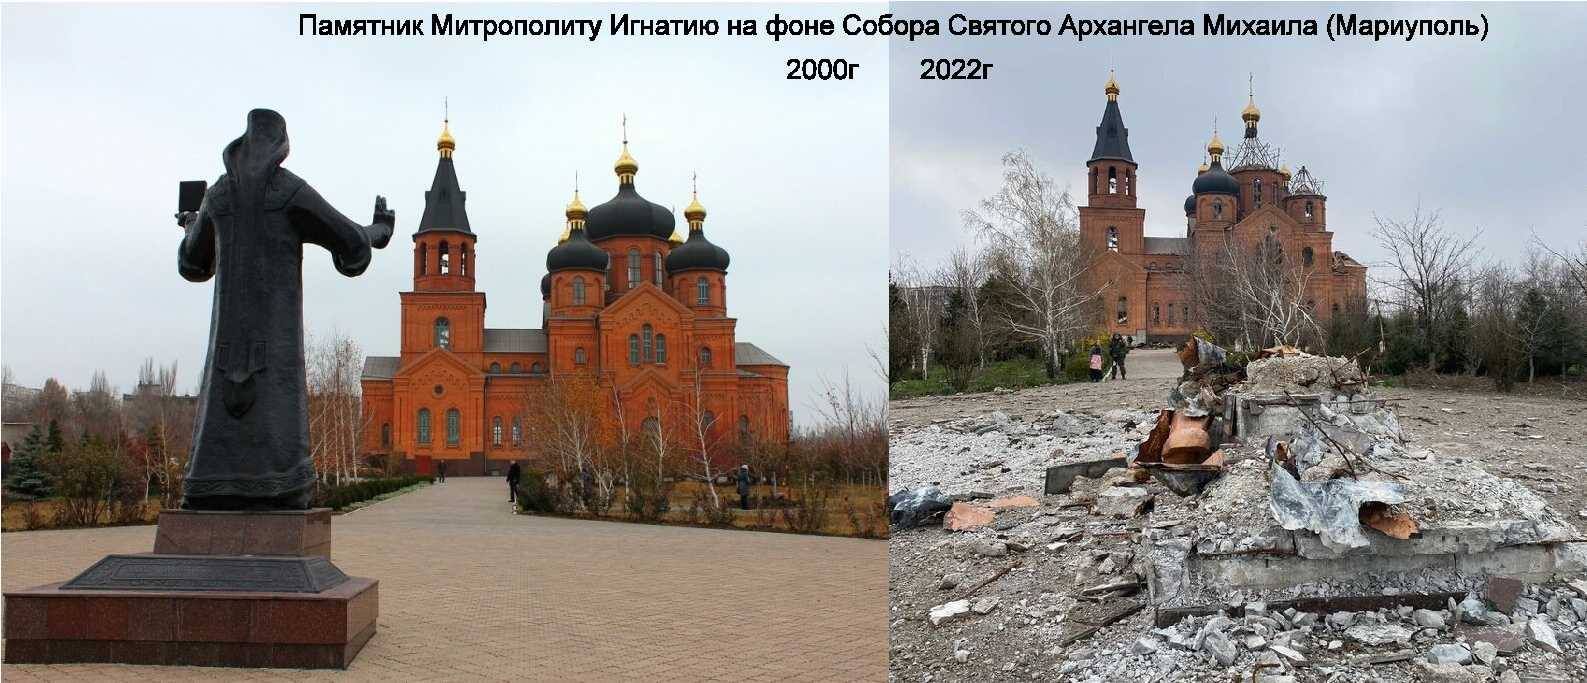 В Мариуполе россияне уничтожили памятник Митрополиту Игнатию